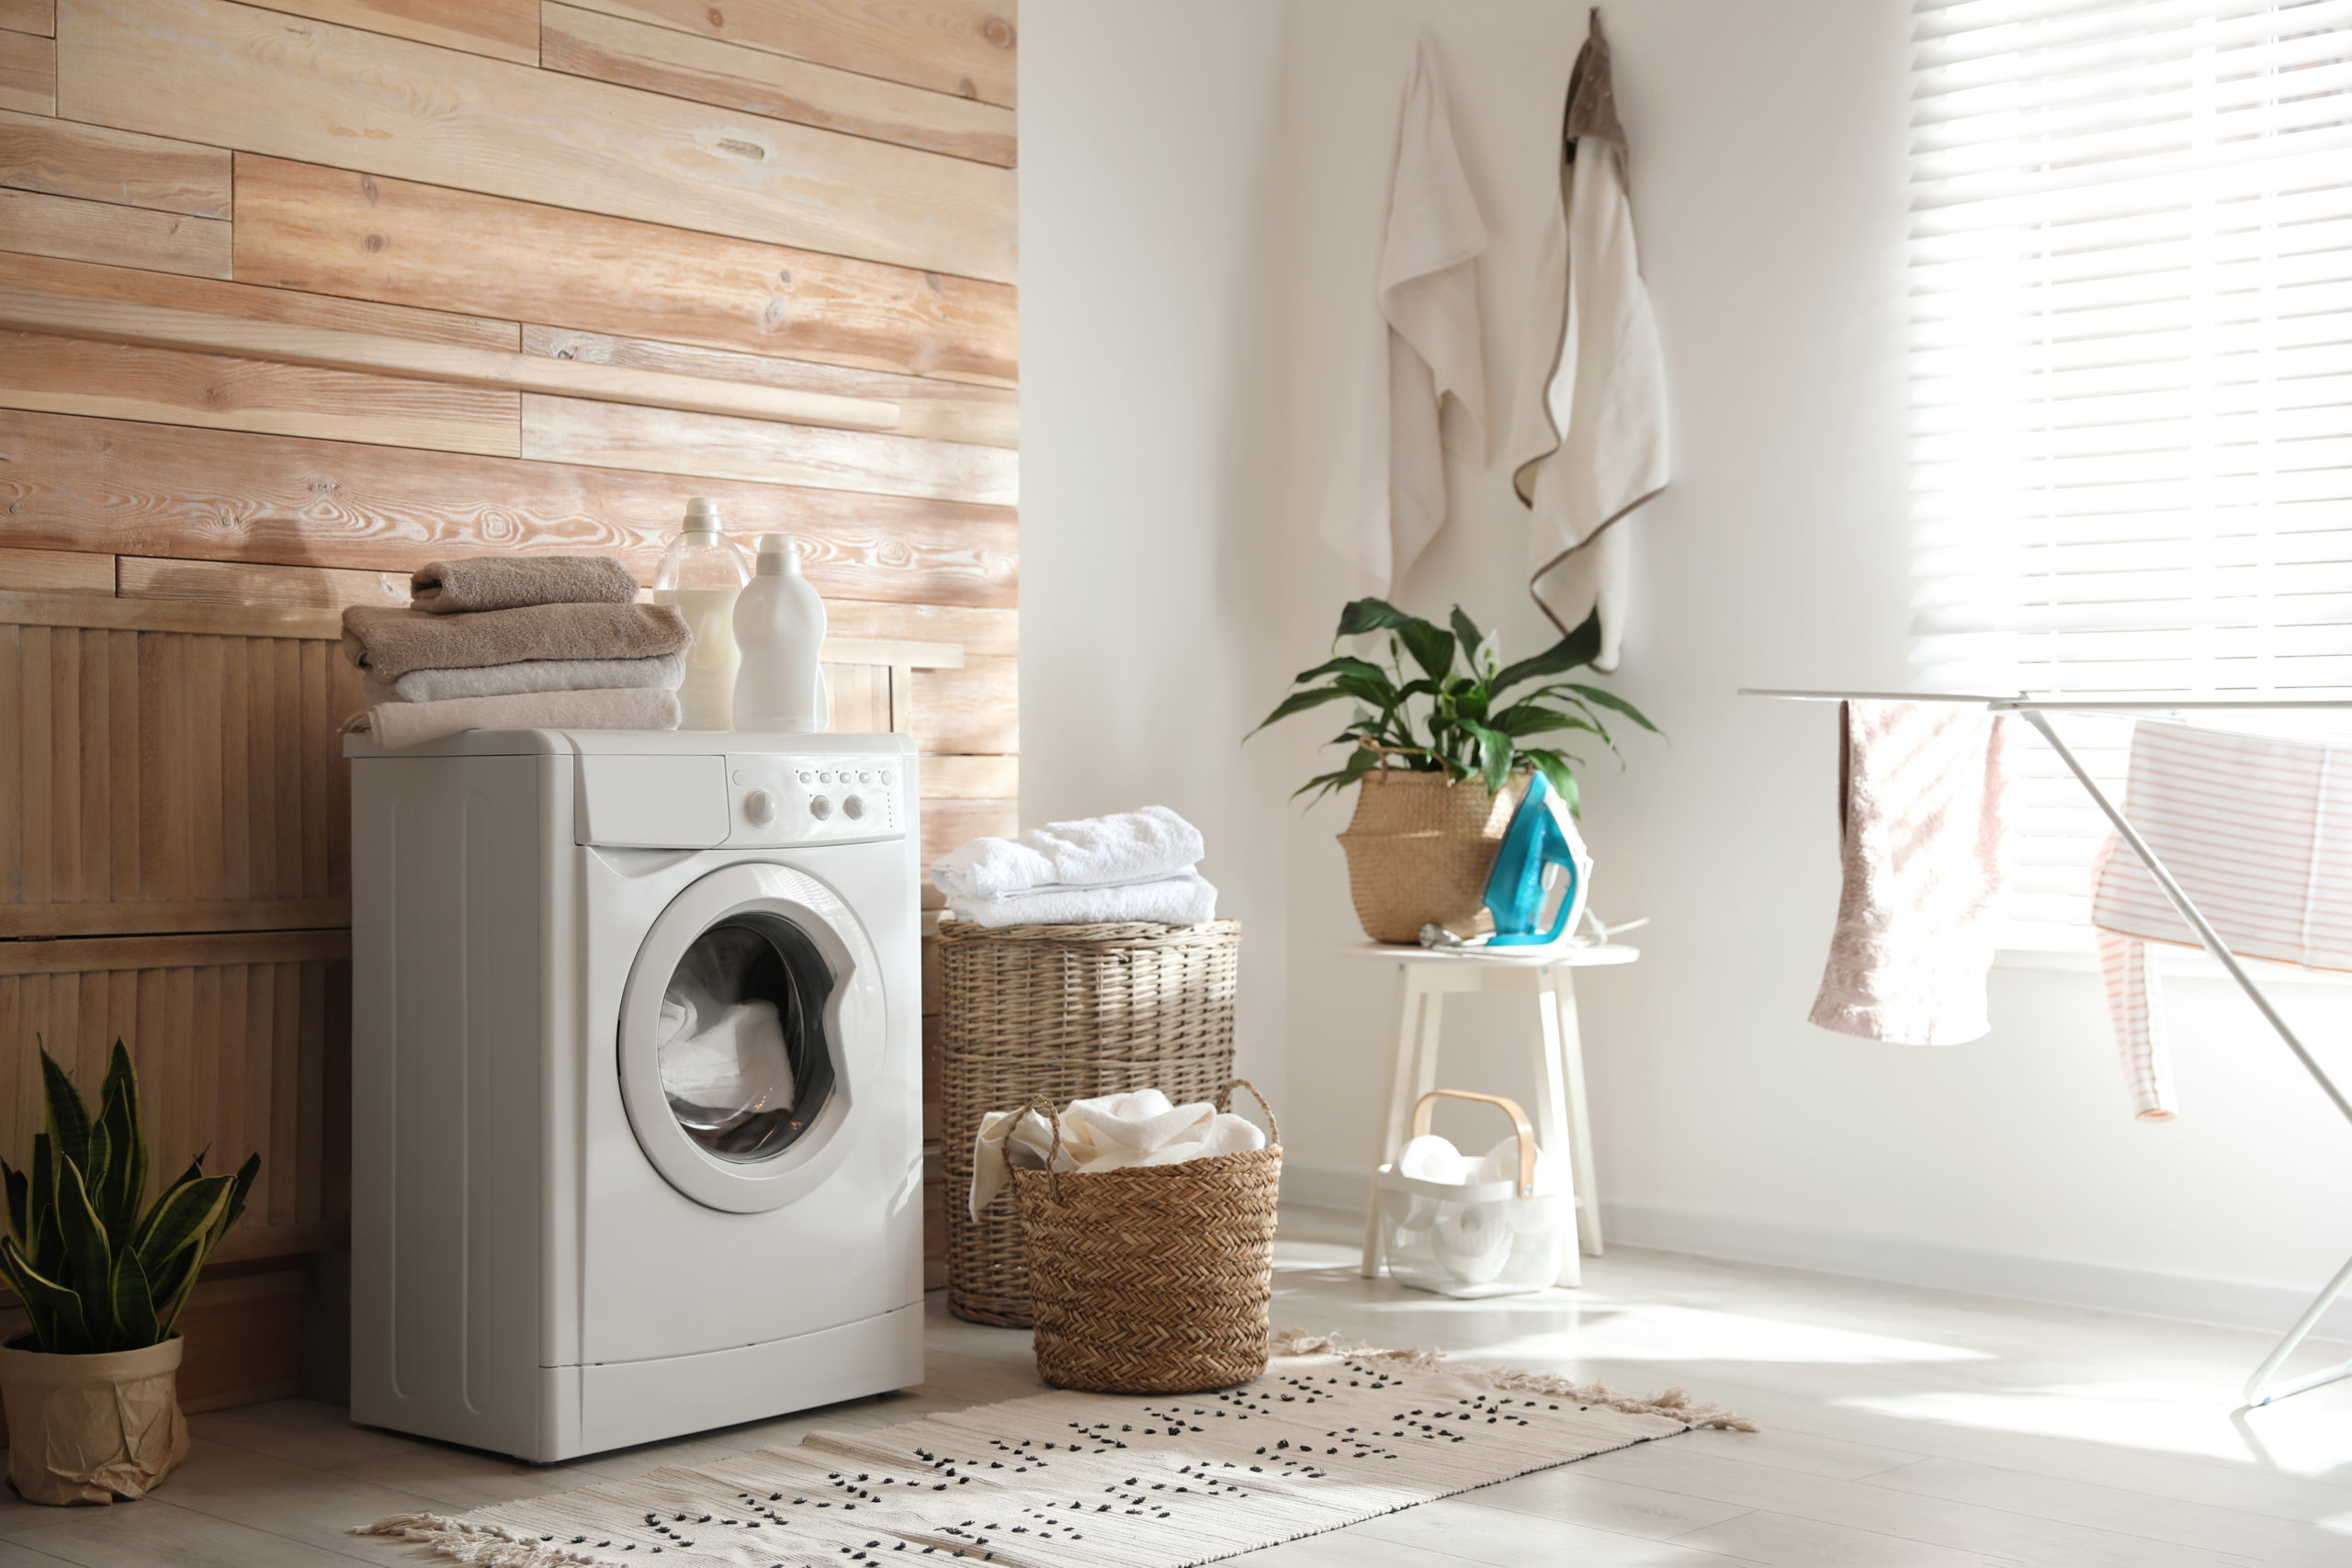 Stylish laundry room with modern washing machine